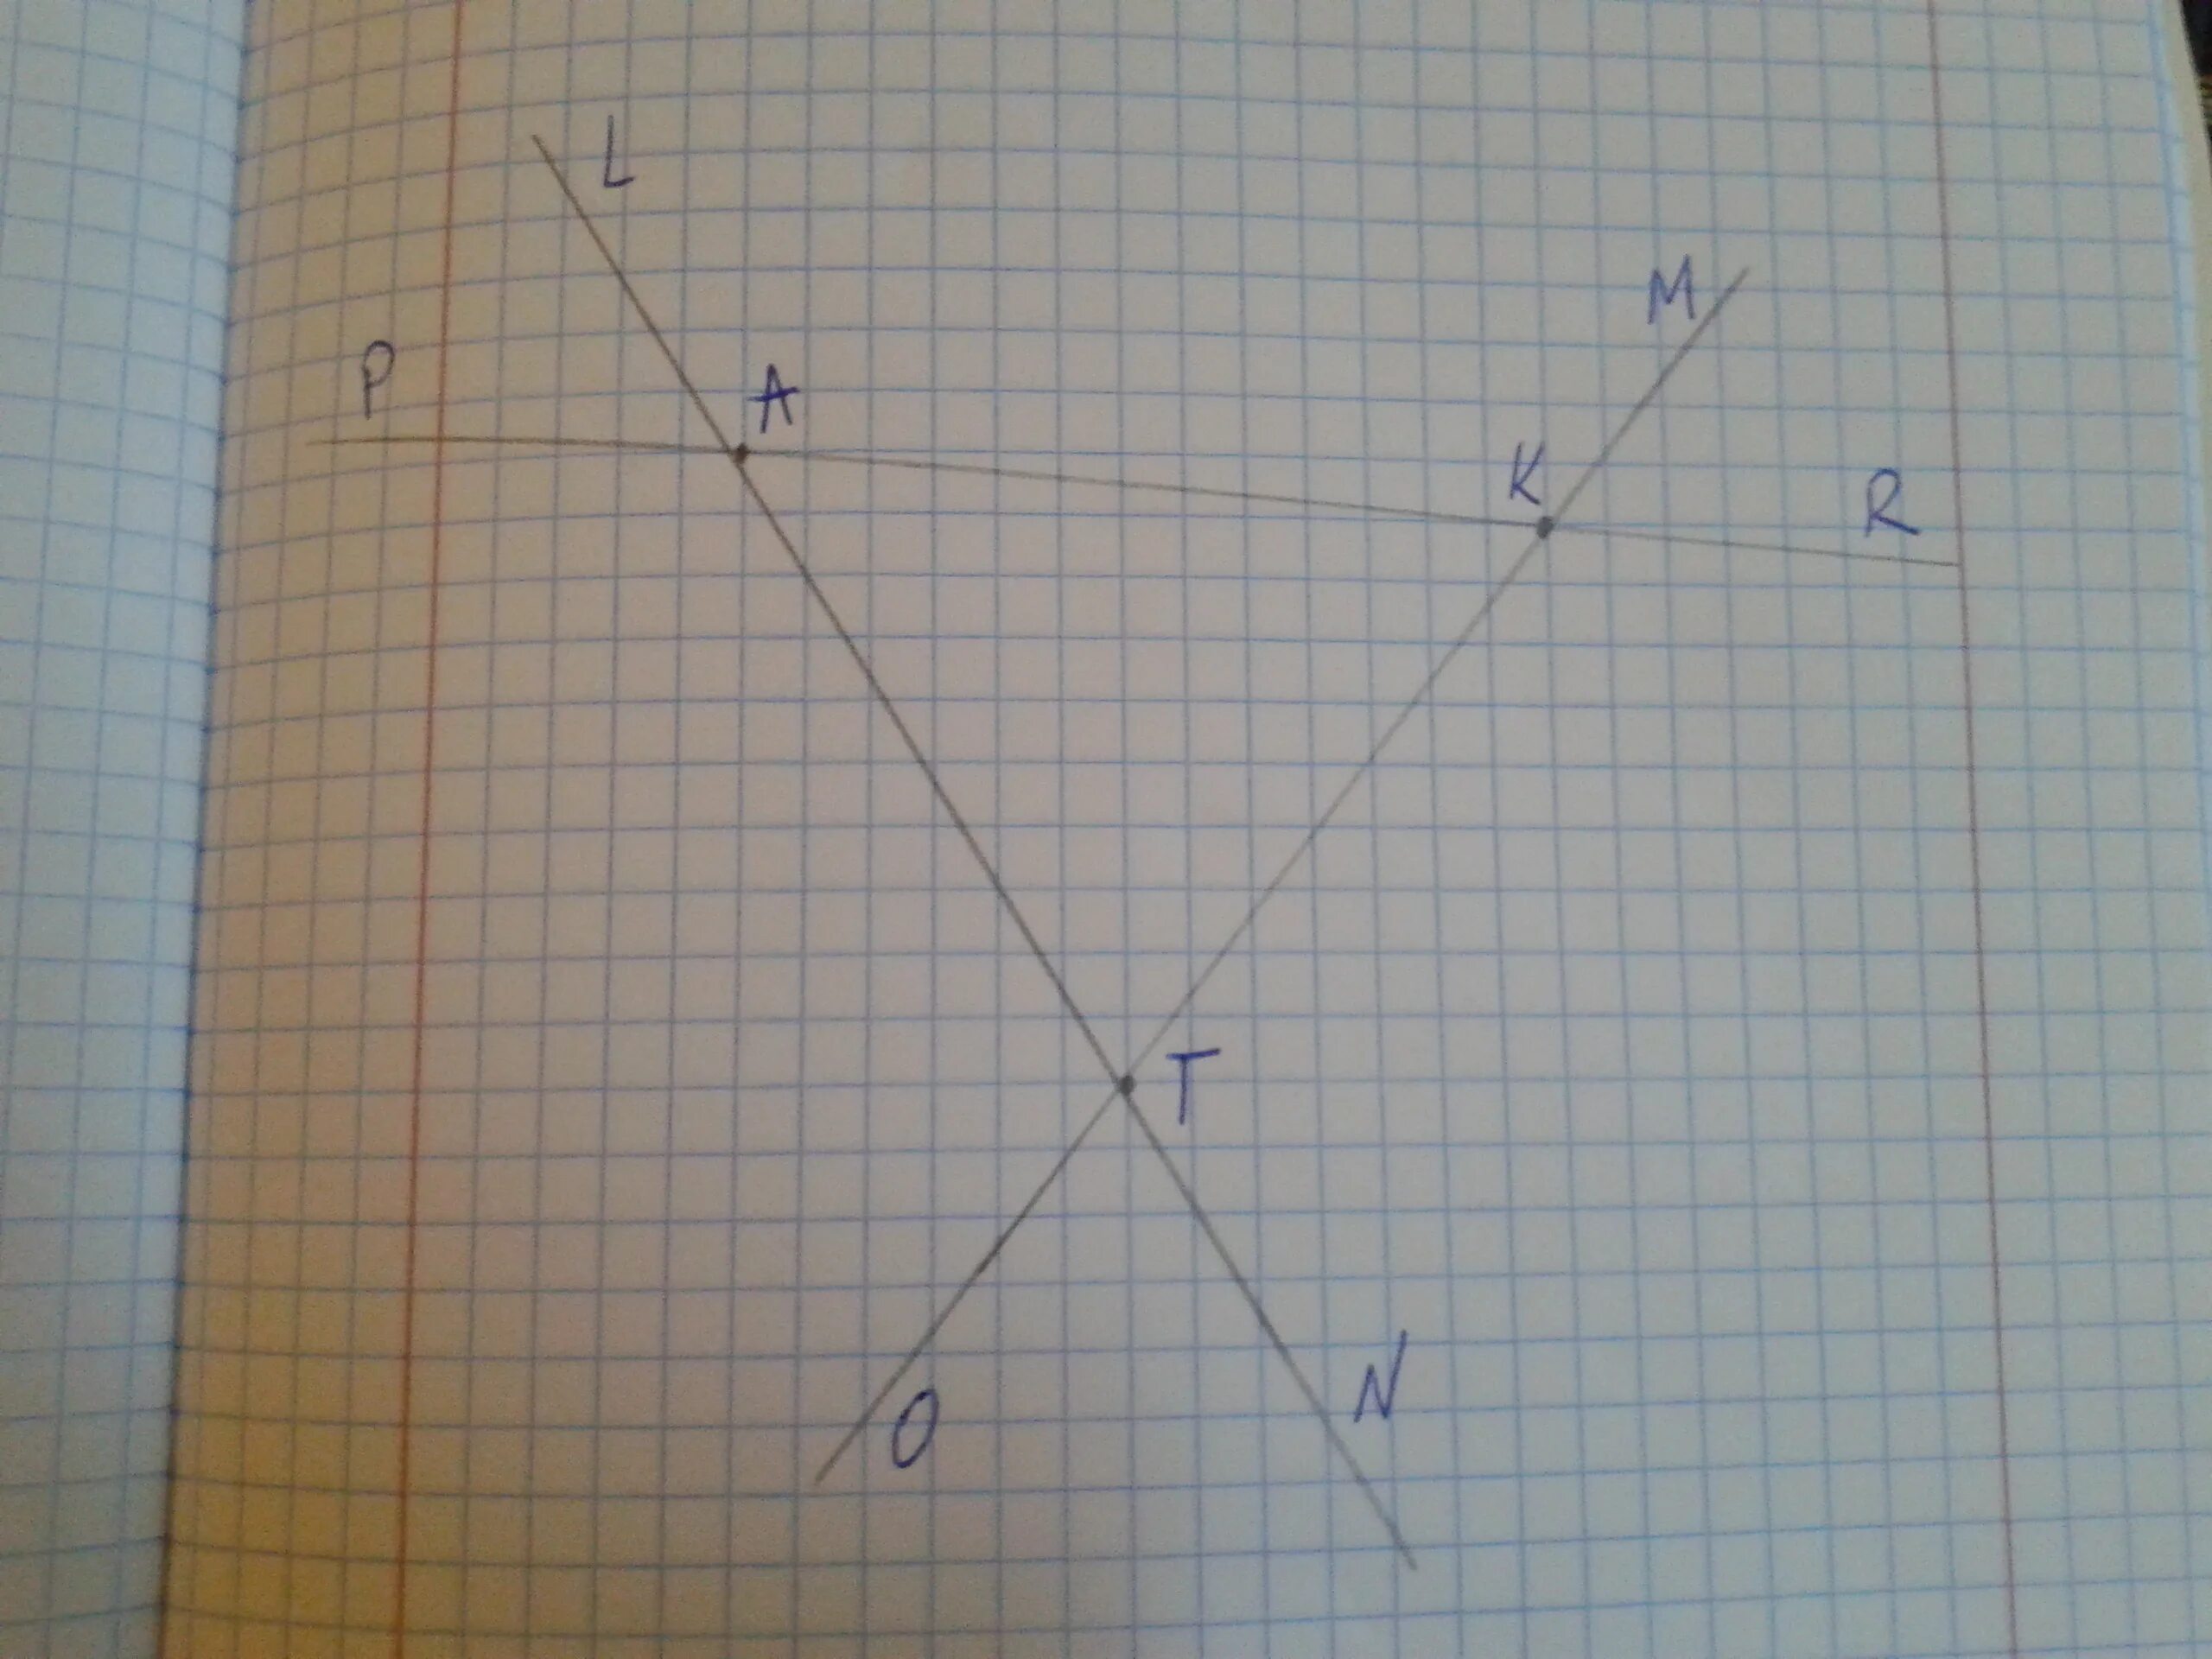 Проведите через точки k и n. Проведи через каждую пару точек прямую. Через каждые 2 точки проведите прямую. Через каждую пару точек проведите прямую.. Проведи через каждые 2 точки прямую.